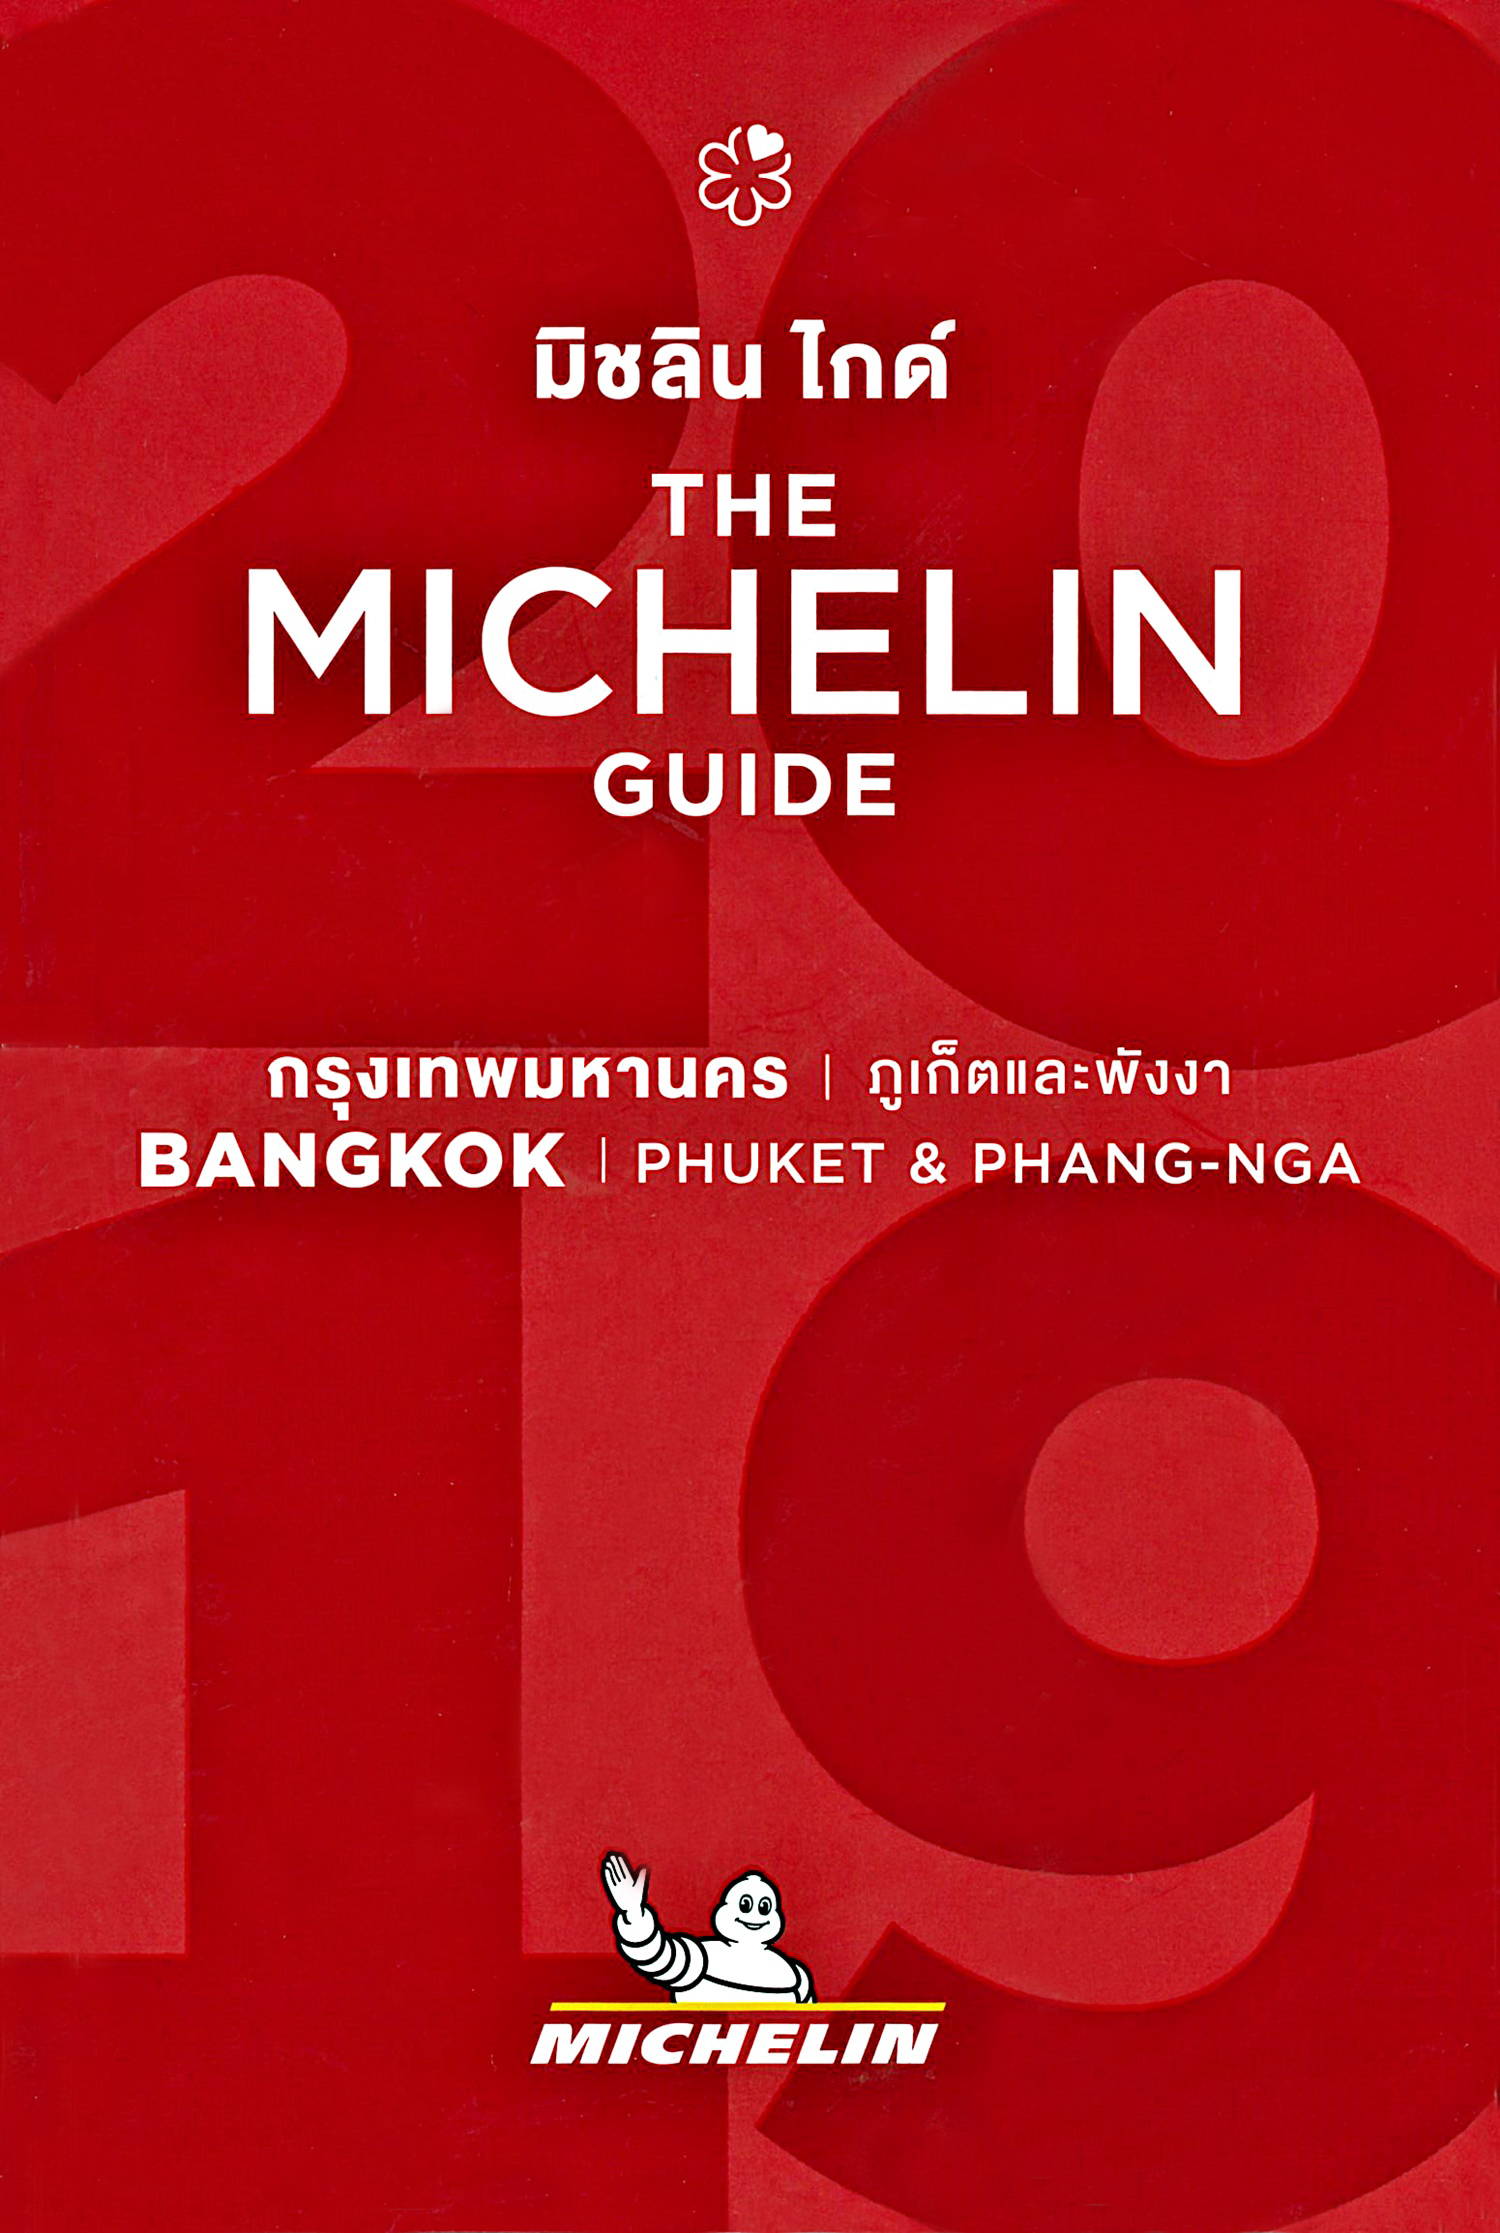 The Michelin Guide 2019